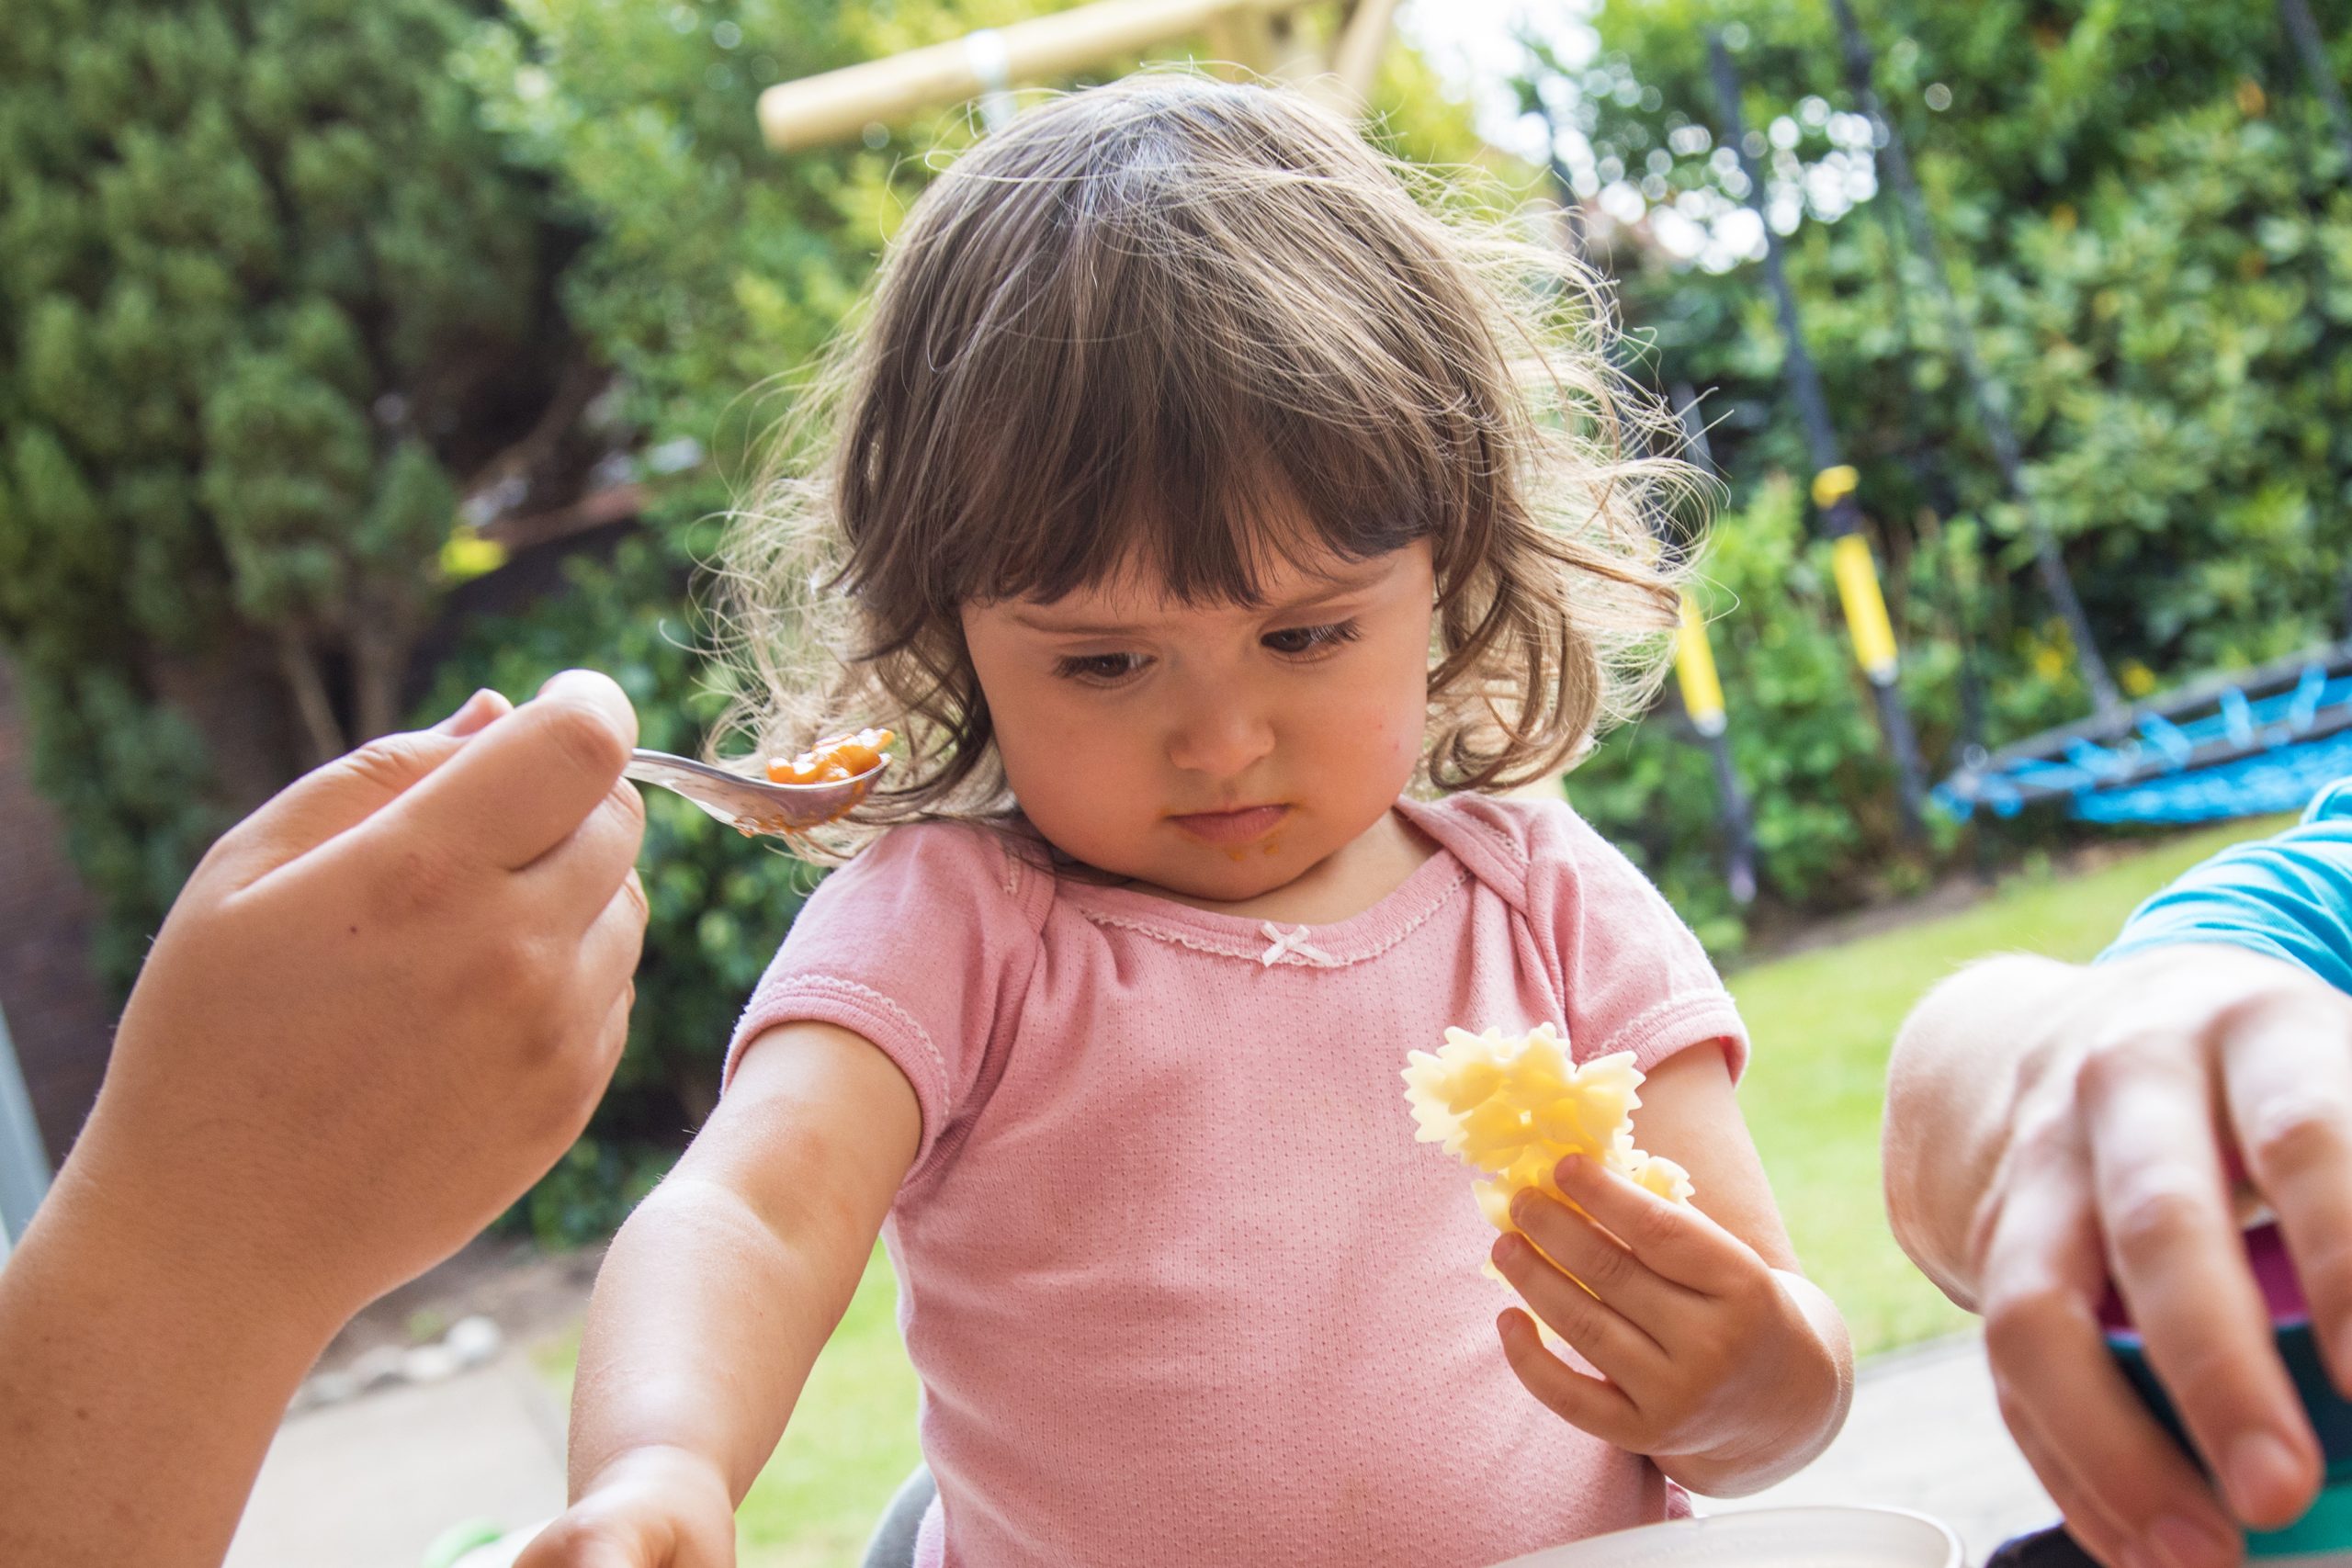 Técnicas para que los niños se alimenten saludablemente